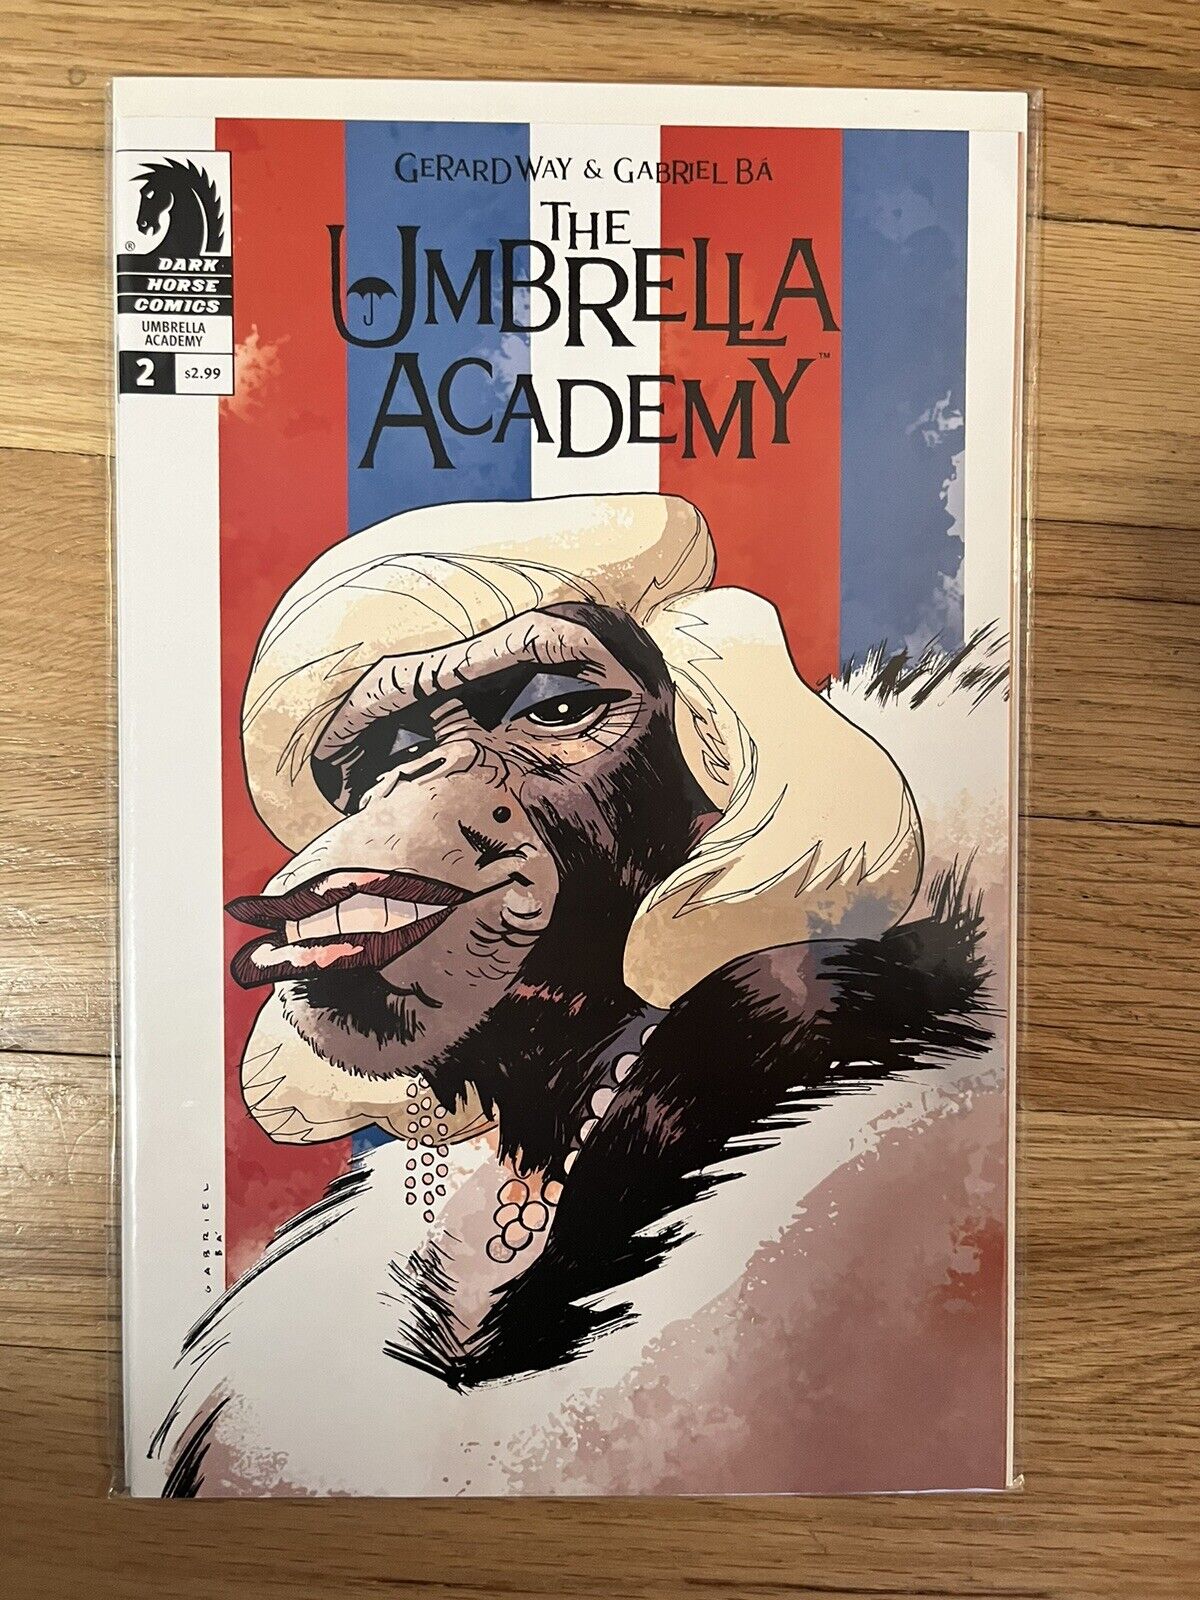 The Umbrella Academy: Dallas #2 (2008, Dark Horse) VF/NM Gerard Way Gabriel Ba